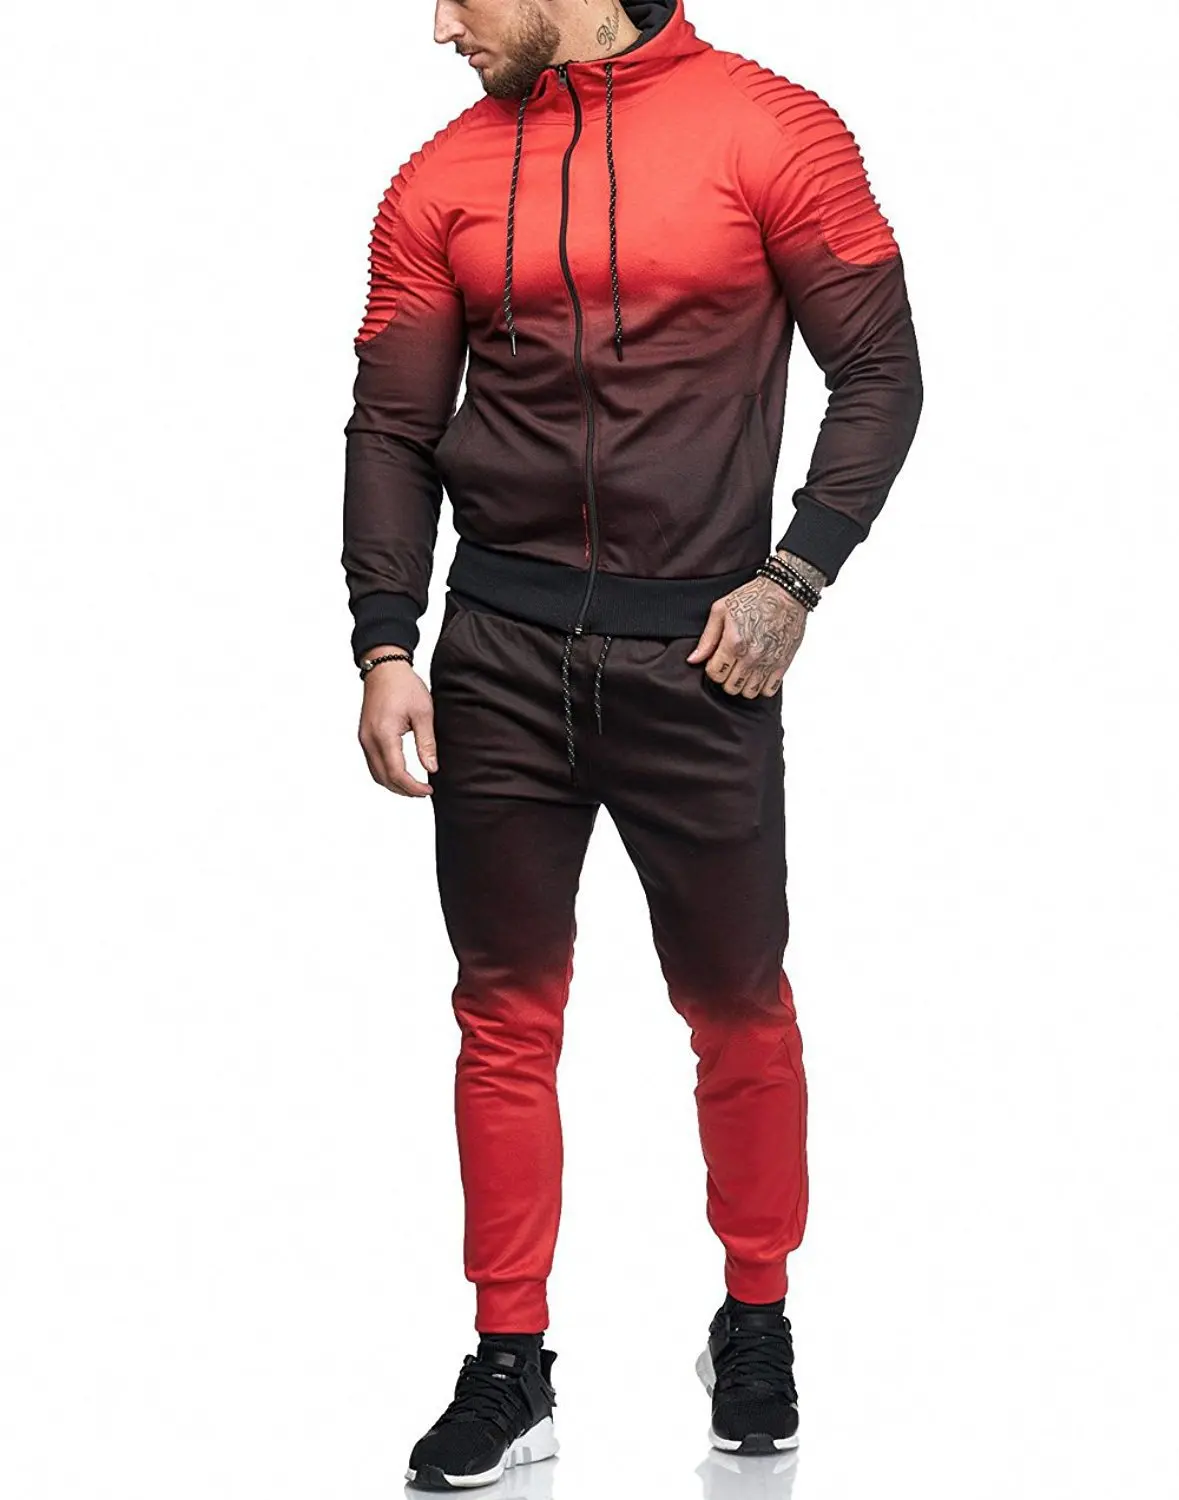 2018 Новый Для мужчин осень толстовки спортивный костюм мужской молния градиент Цвет плиссированные Толстовка Sweatsuits Street куртки комплекты M-3XL